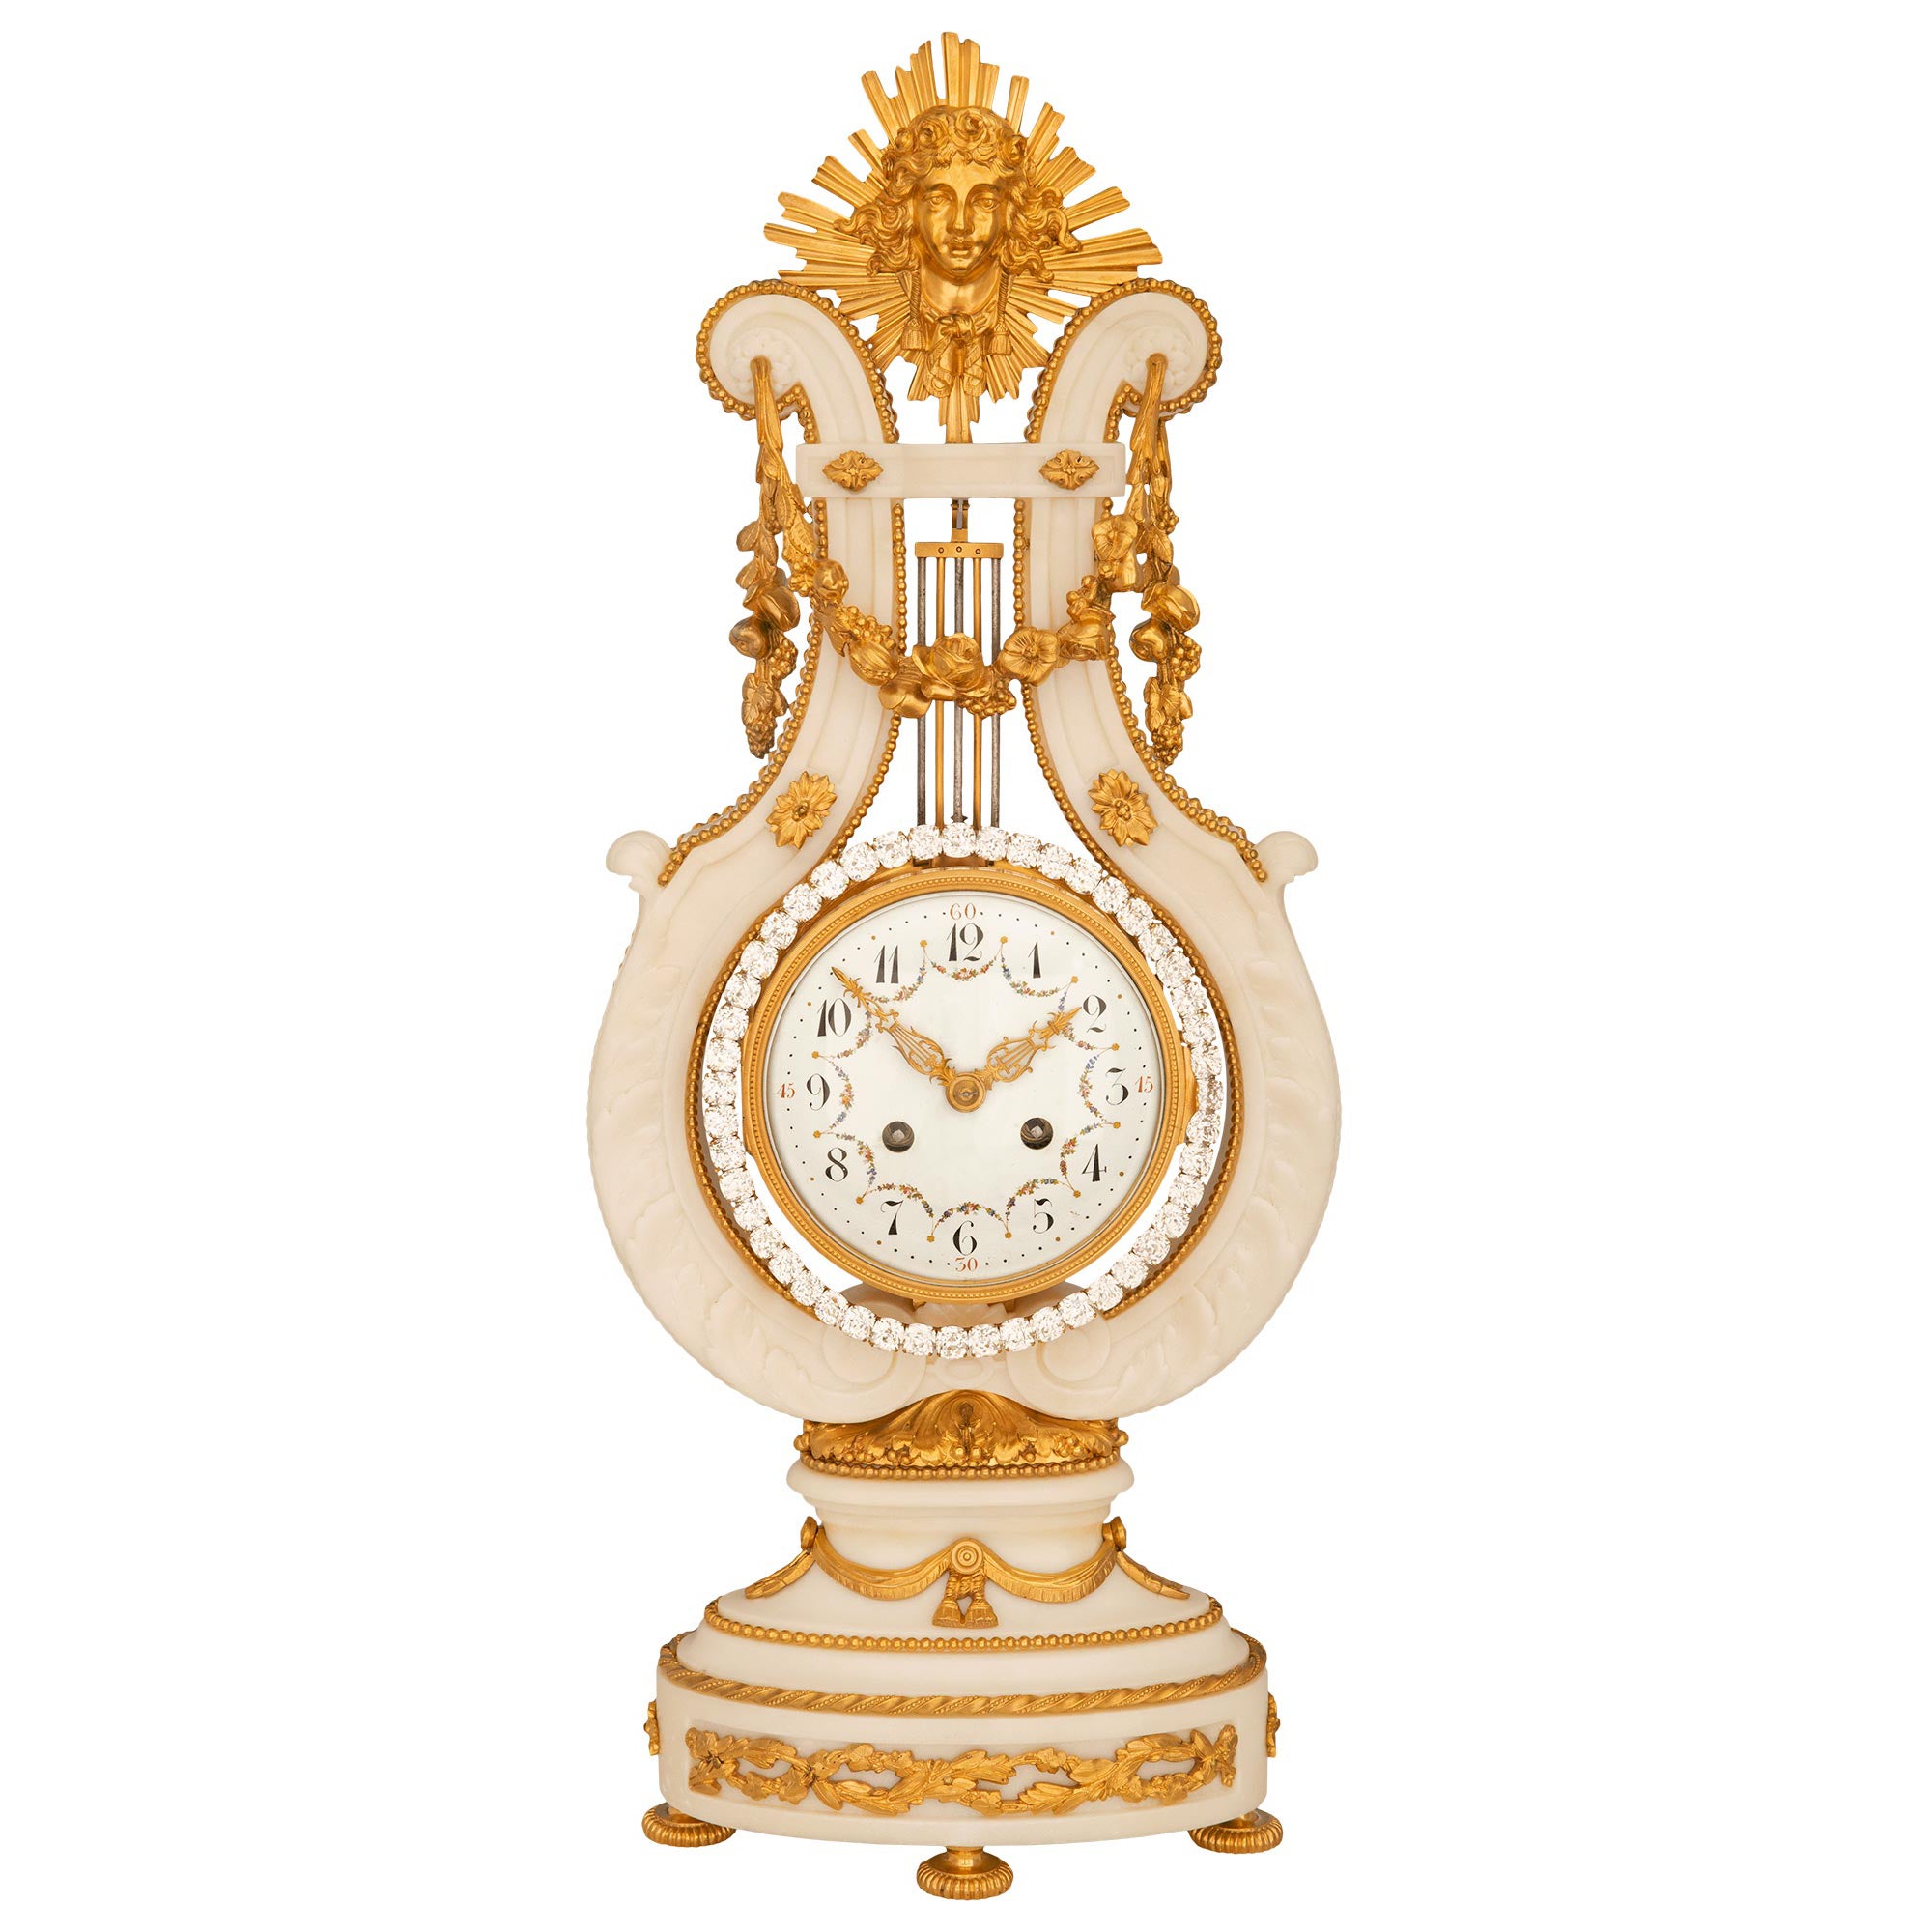 Horloge française du 19ème siècle de style Louis XVI en marbre de Carrare blanc, bronze doré et bijoux